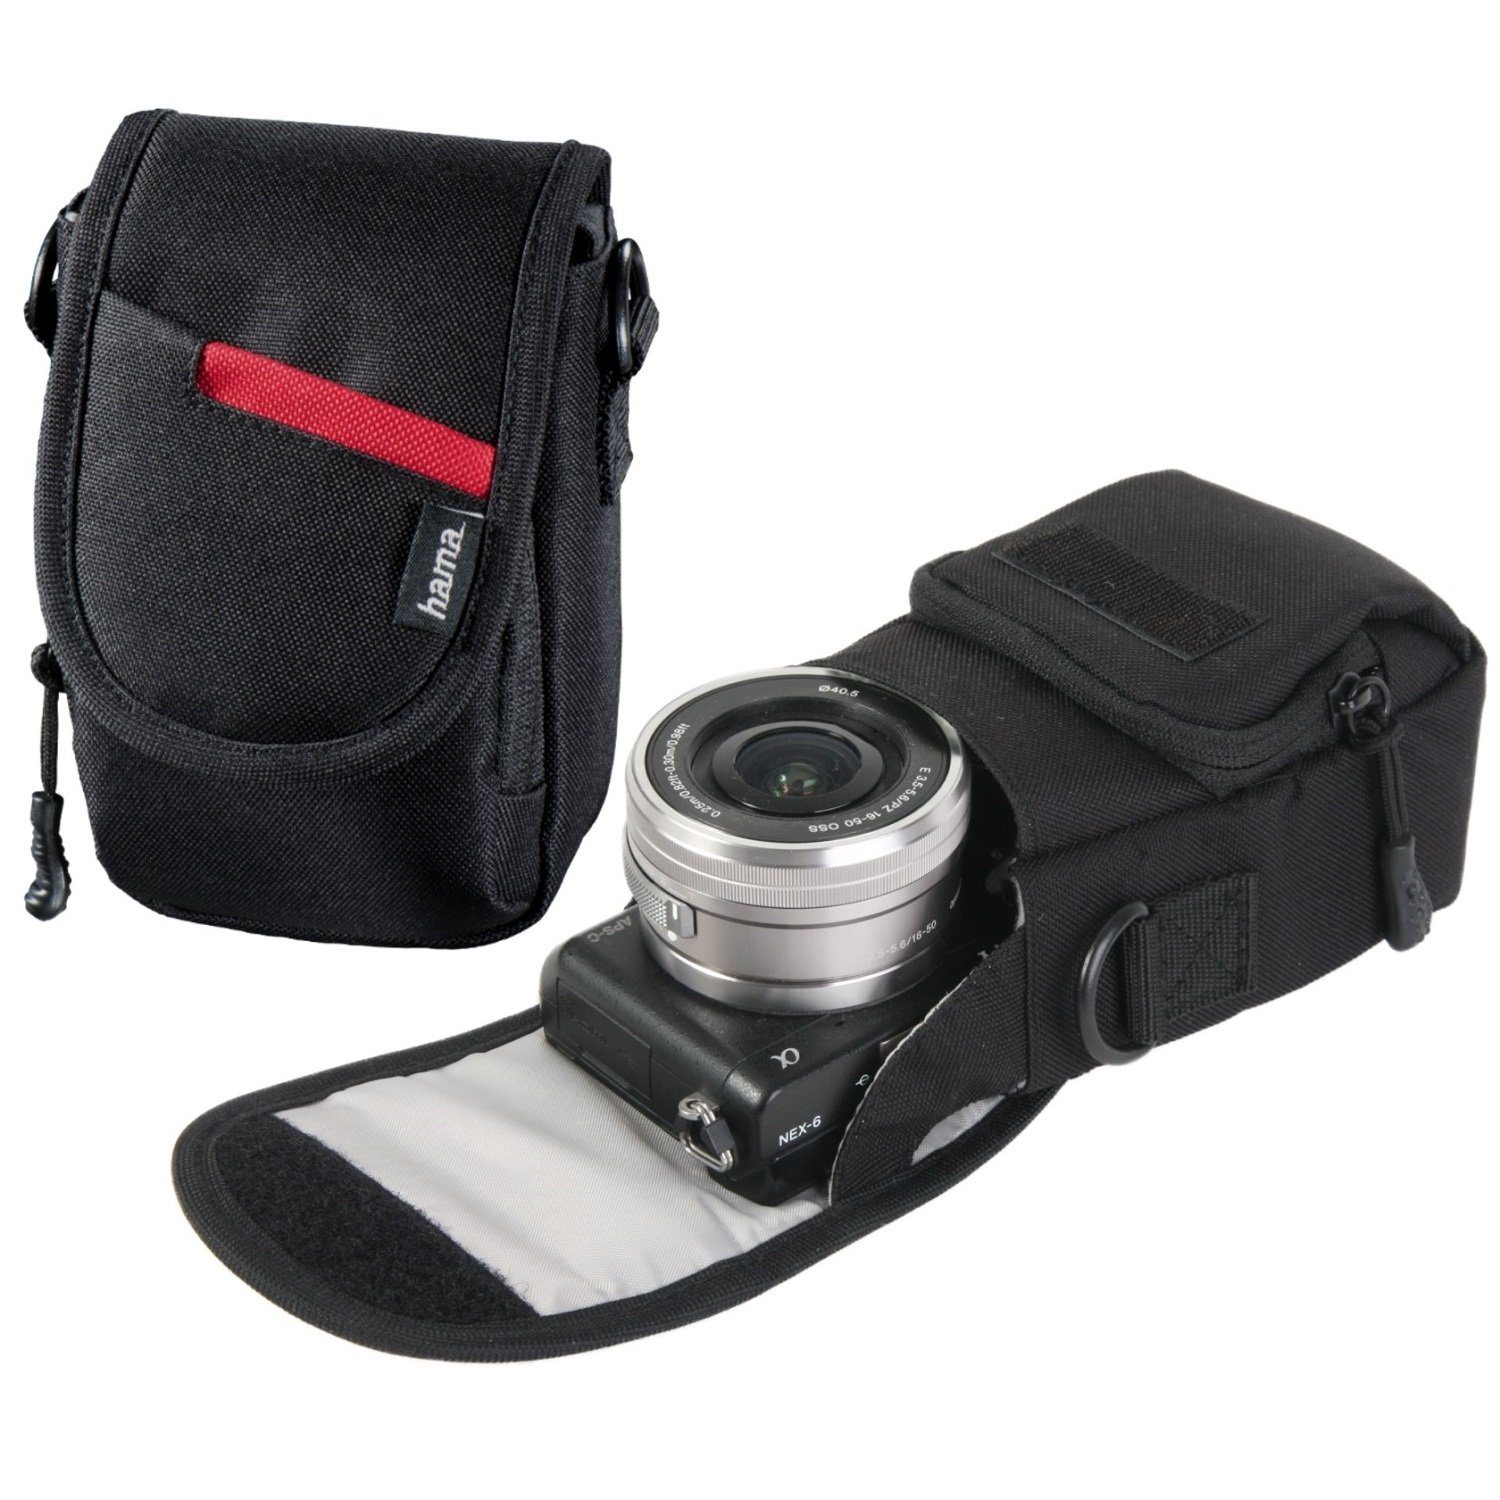 Camcorder Cover, Kamera-Tasche Hama Gürtel-Schlaufe, Case Kamera Schutz-Hülle Schultergurt, Systemkamera Kameratasche für